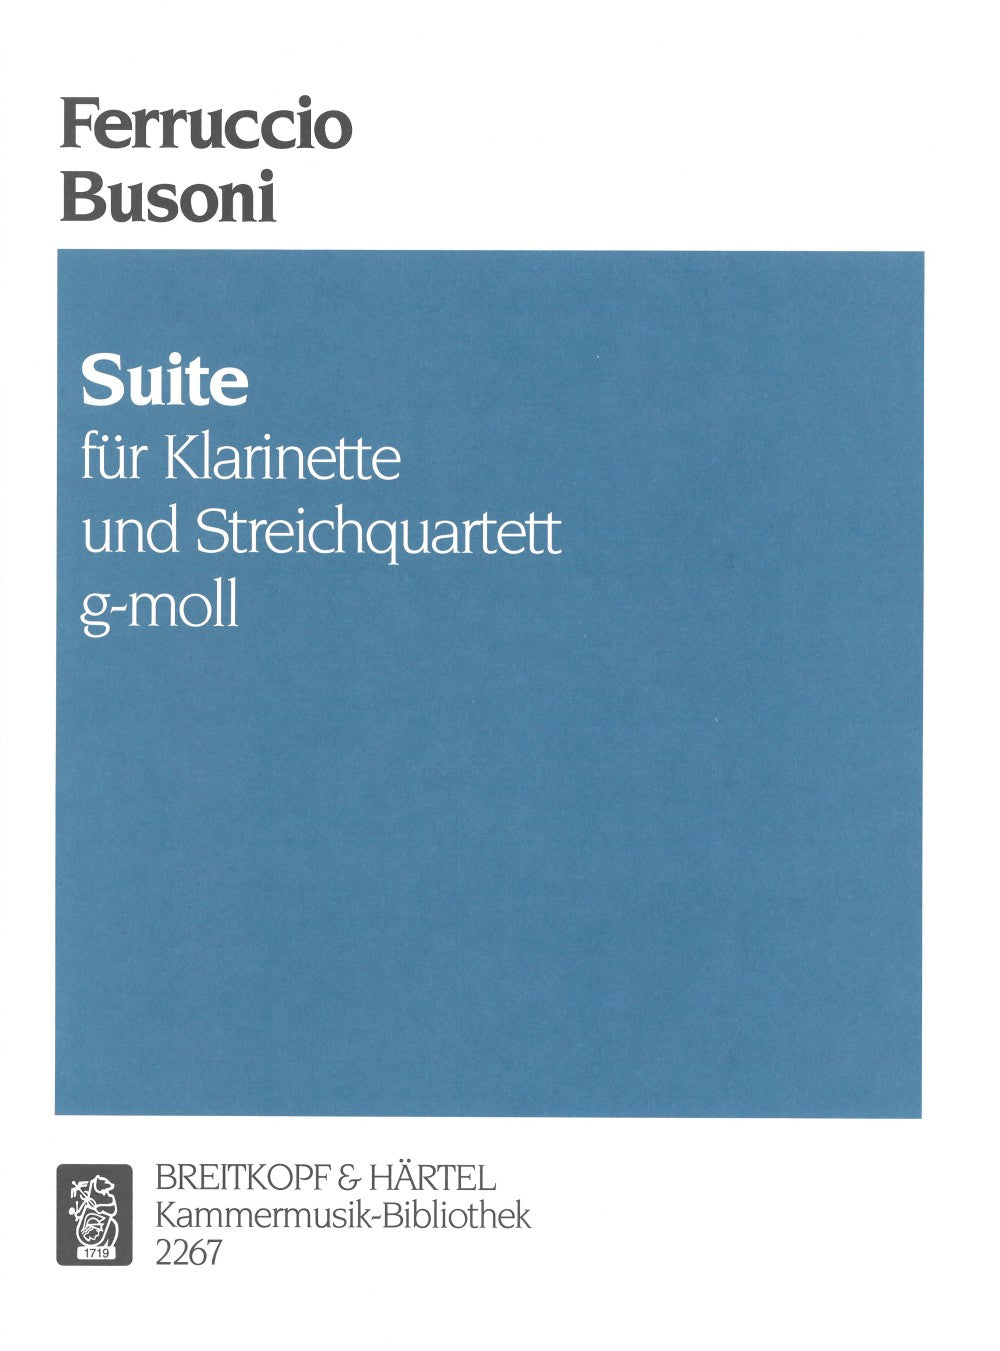 Busoni: Suite in G Minor, BV 176